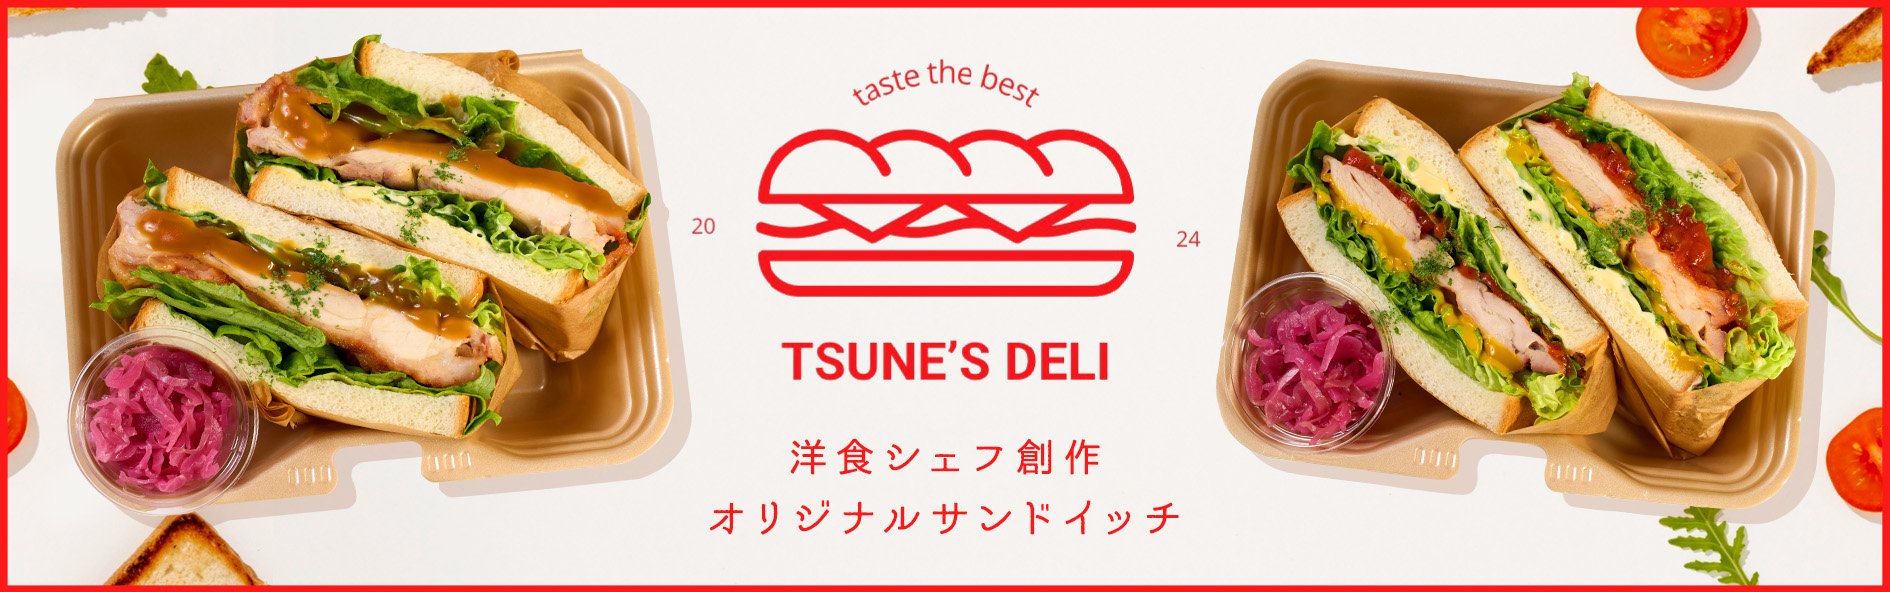 Tsune's deli Sandwich